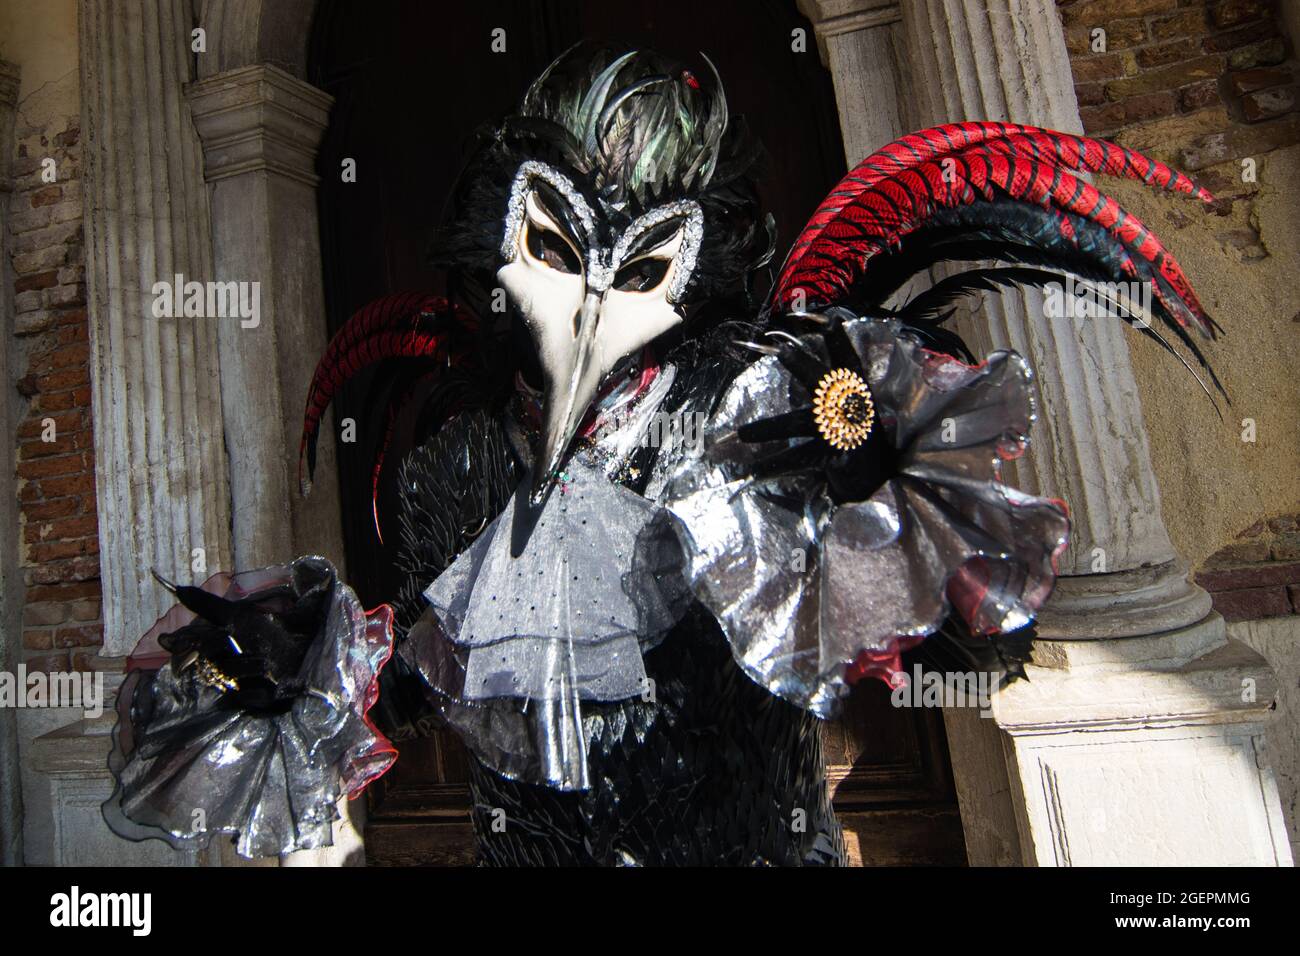 Personne portant un masque d'oiseau et un costume de carnaval posant sur le fond d'un ancien bâtiment Banque D'Images